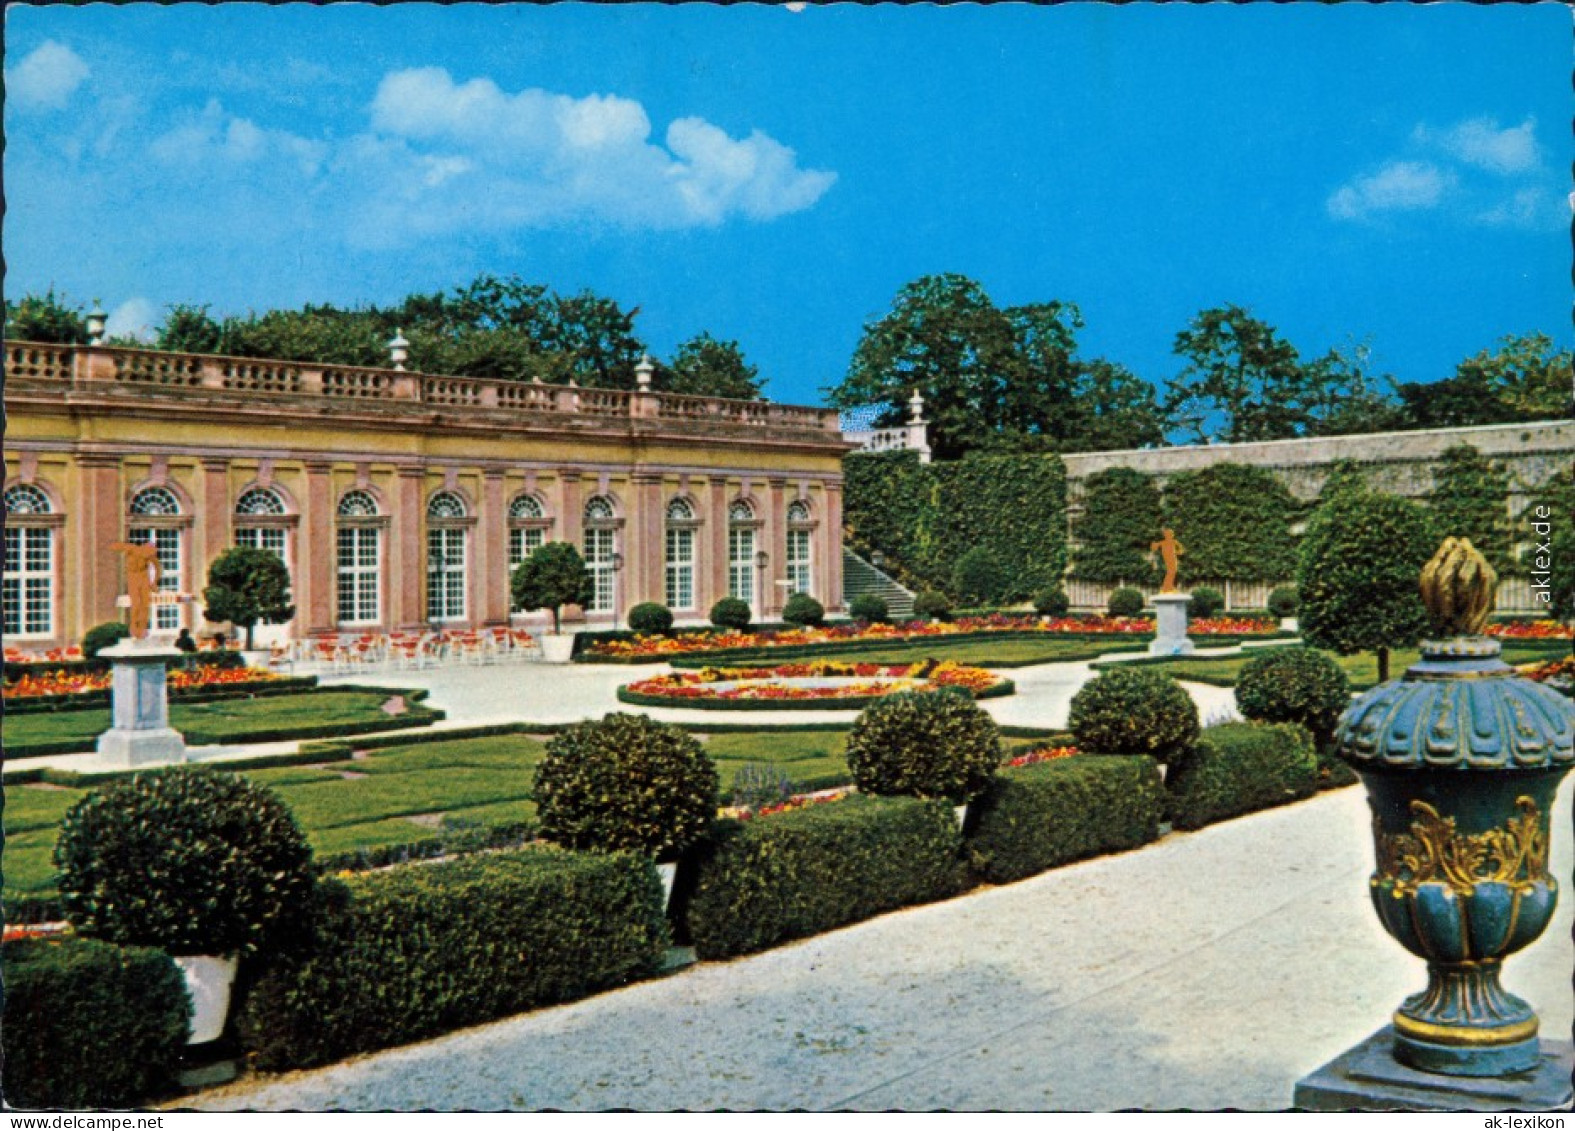 Ansichtskarte Weilburg (Lahn) Schloßpark 1979 - Weilburg